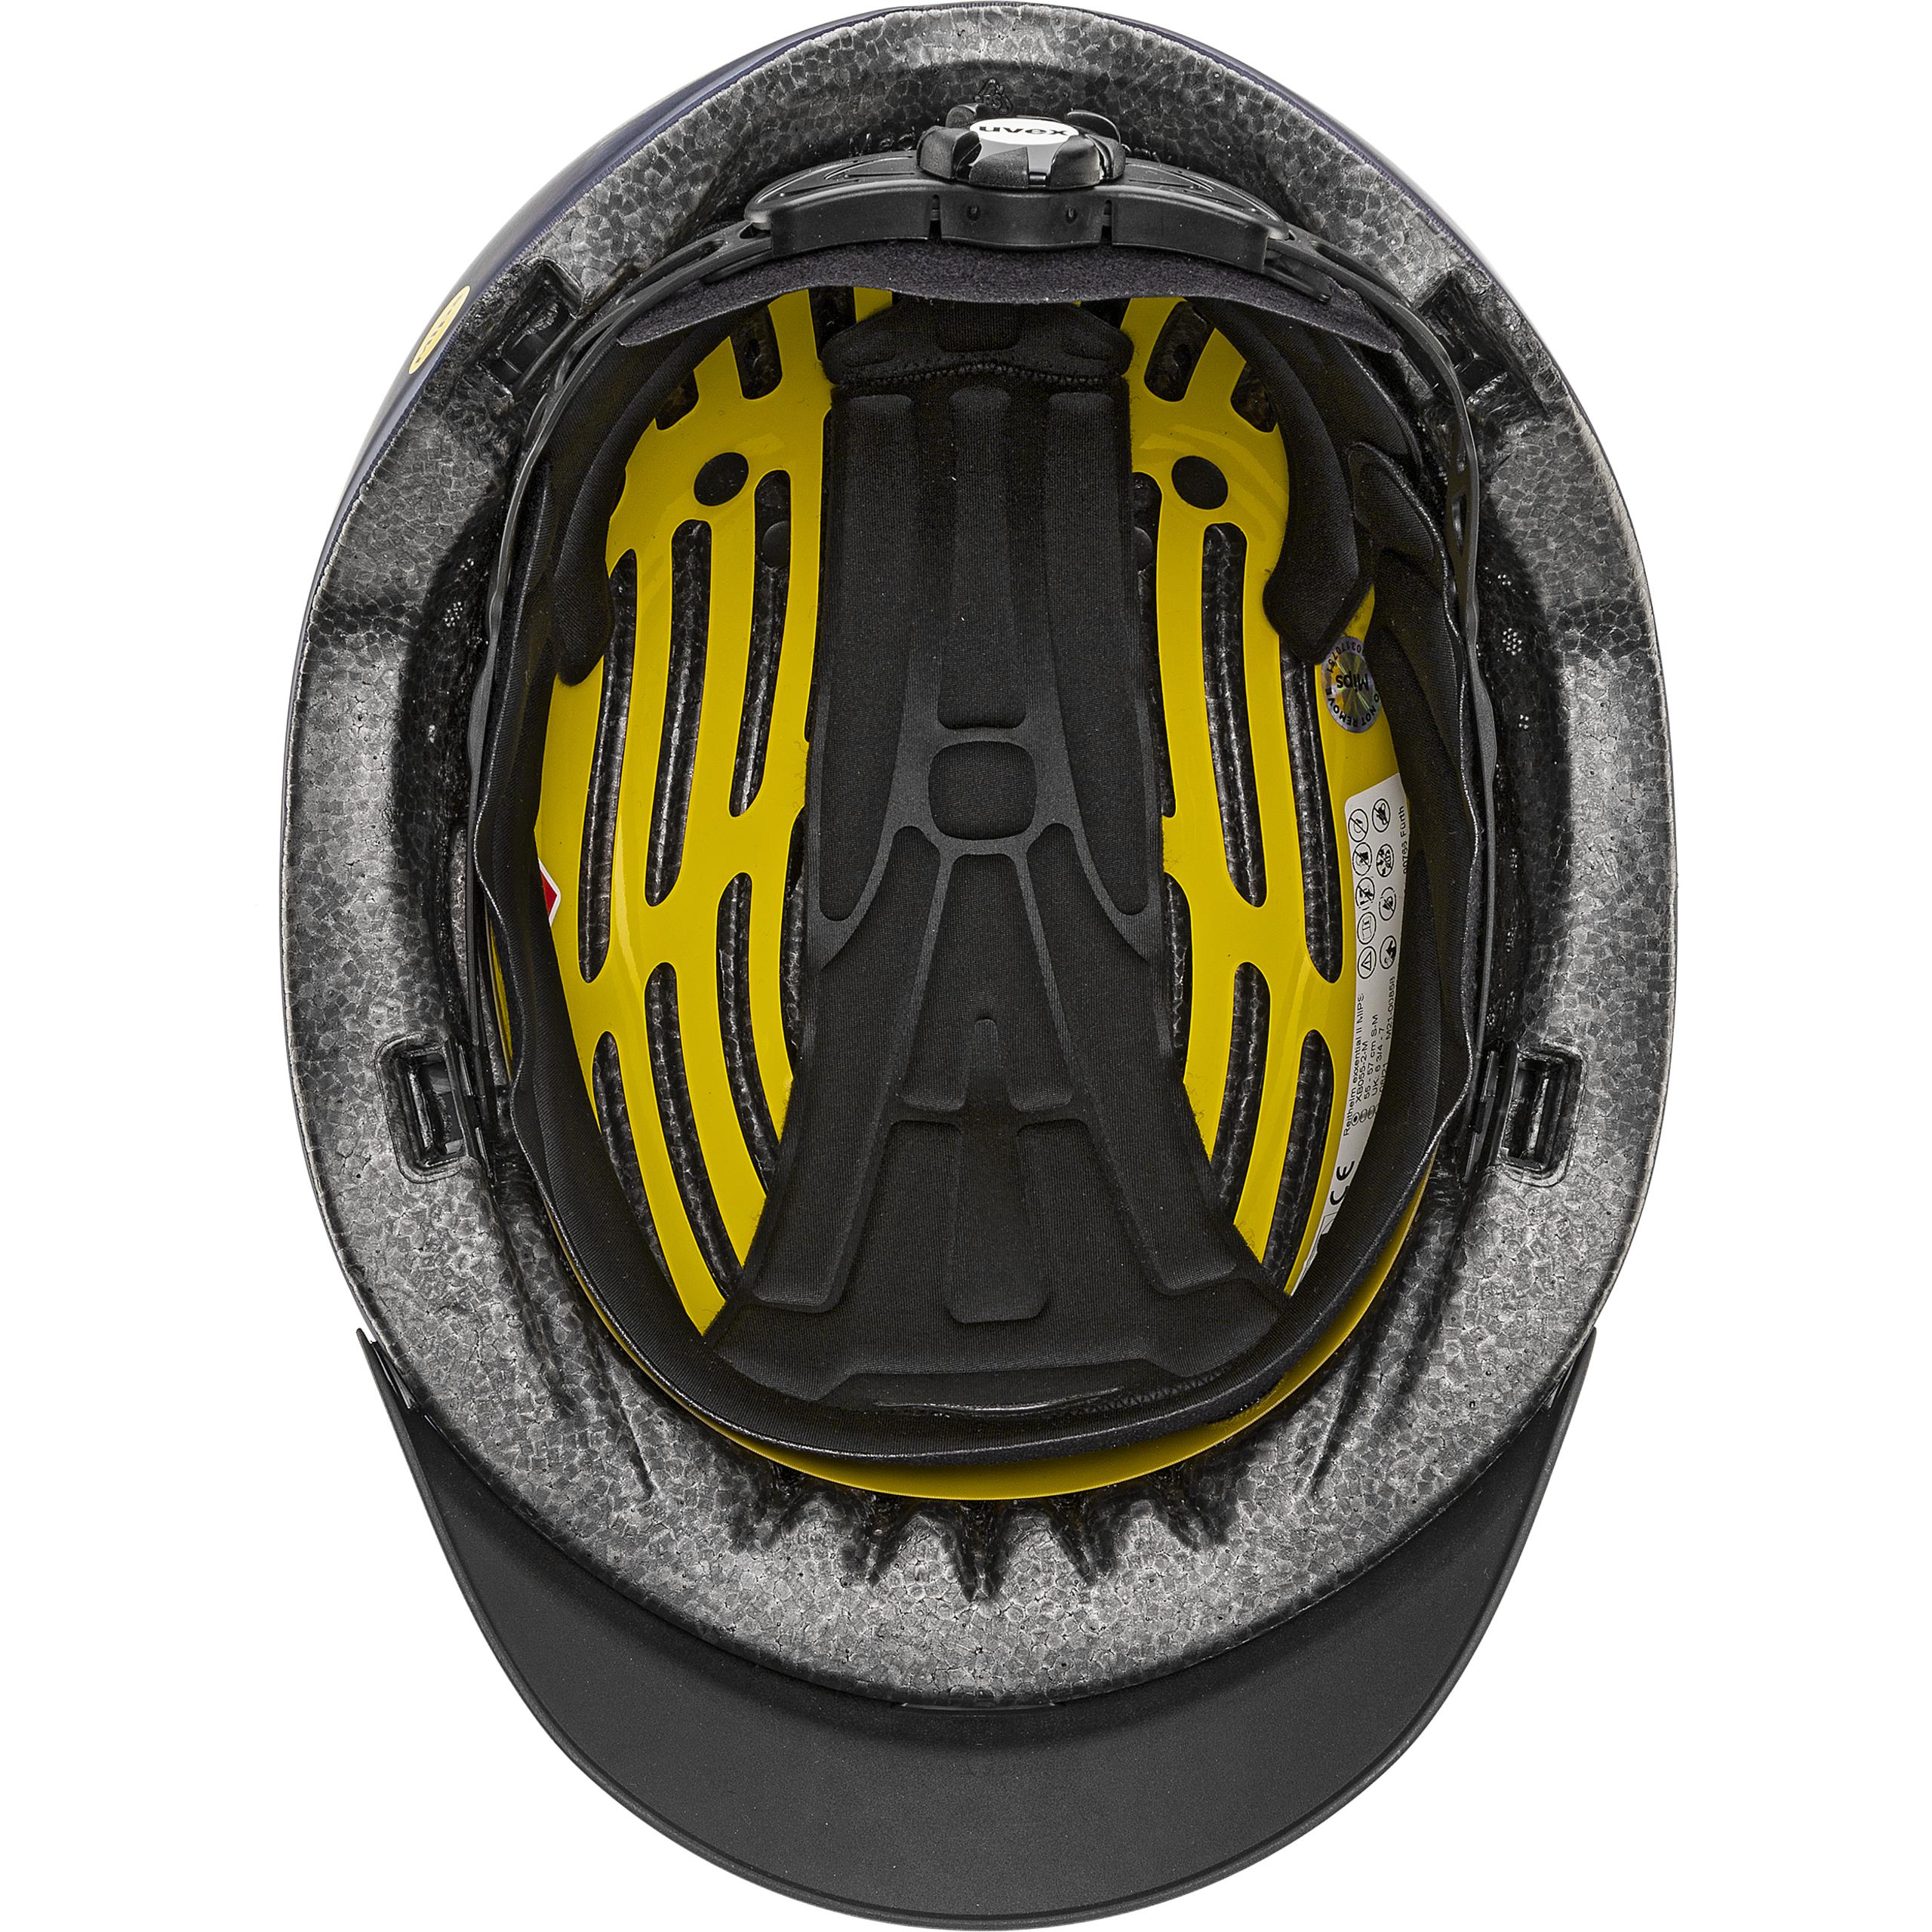 Uvex Exxential II MIPS Helmet, Navy